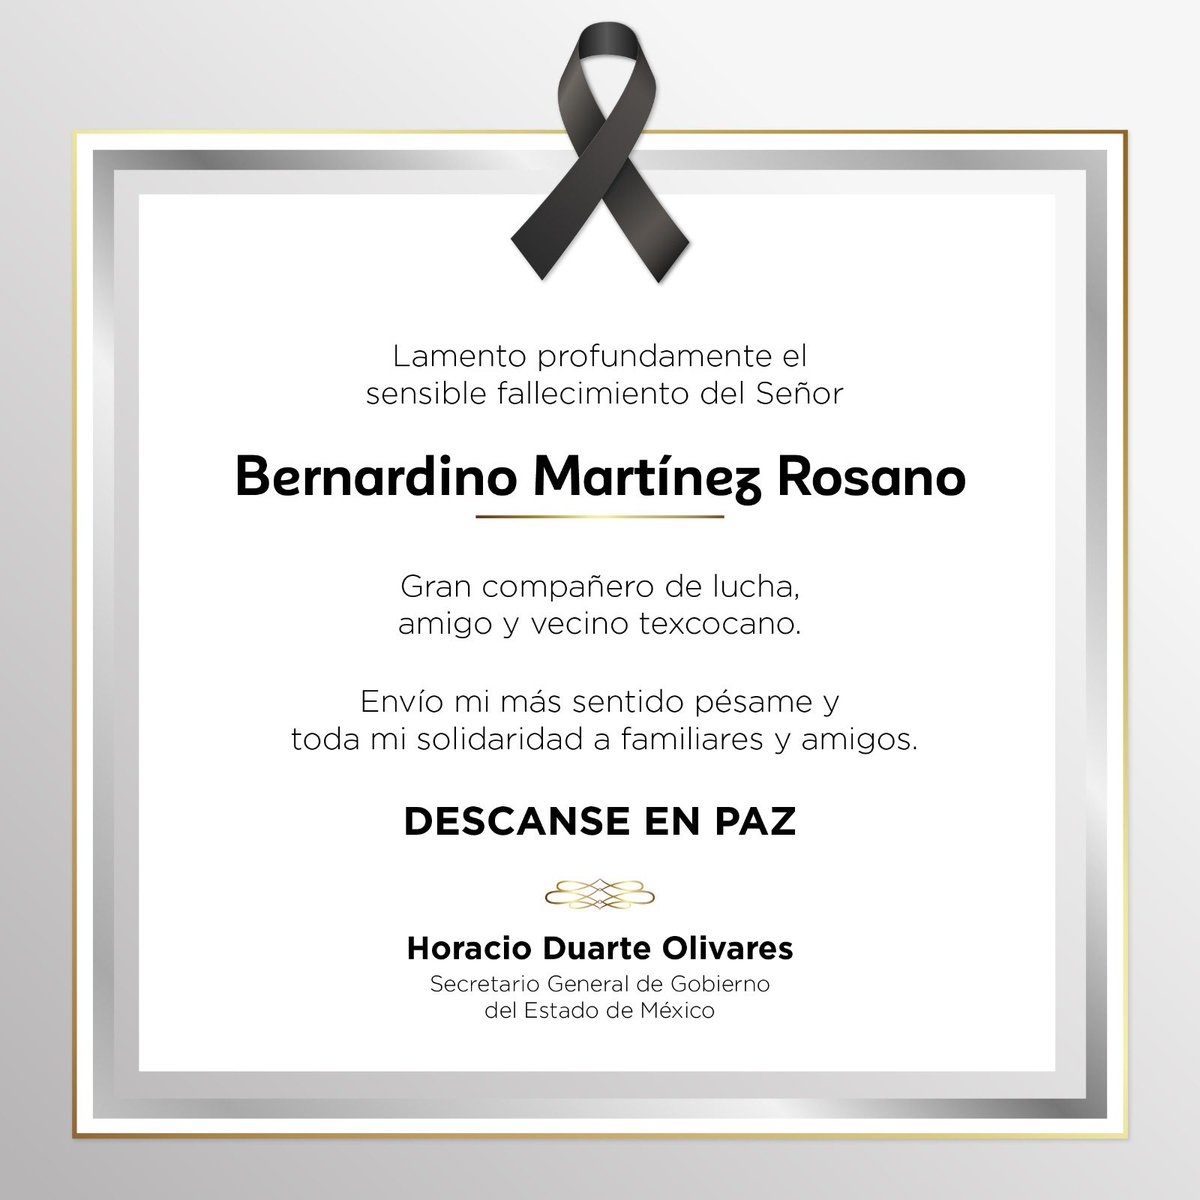 Con pesar recibo la noticia del fallecimiento de un gran amigo y vecino texcocano, Don Bernardino Martínez. Envío mis condolencias a sus seres queridos. Descanse en paz.